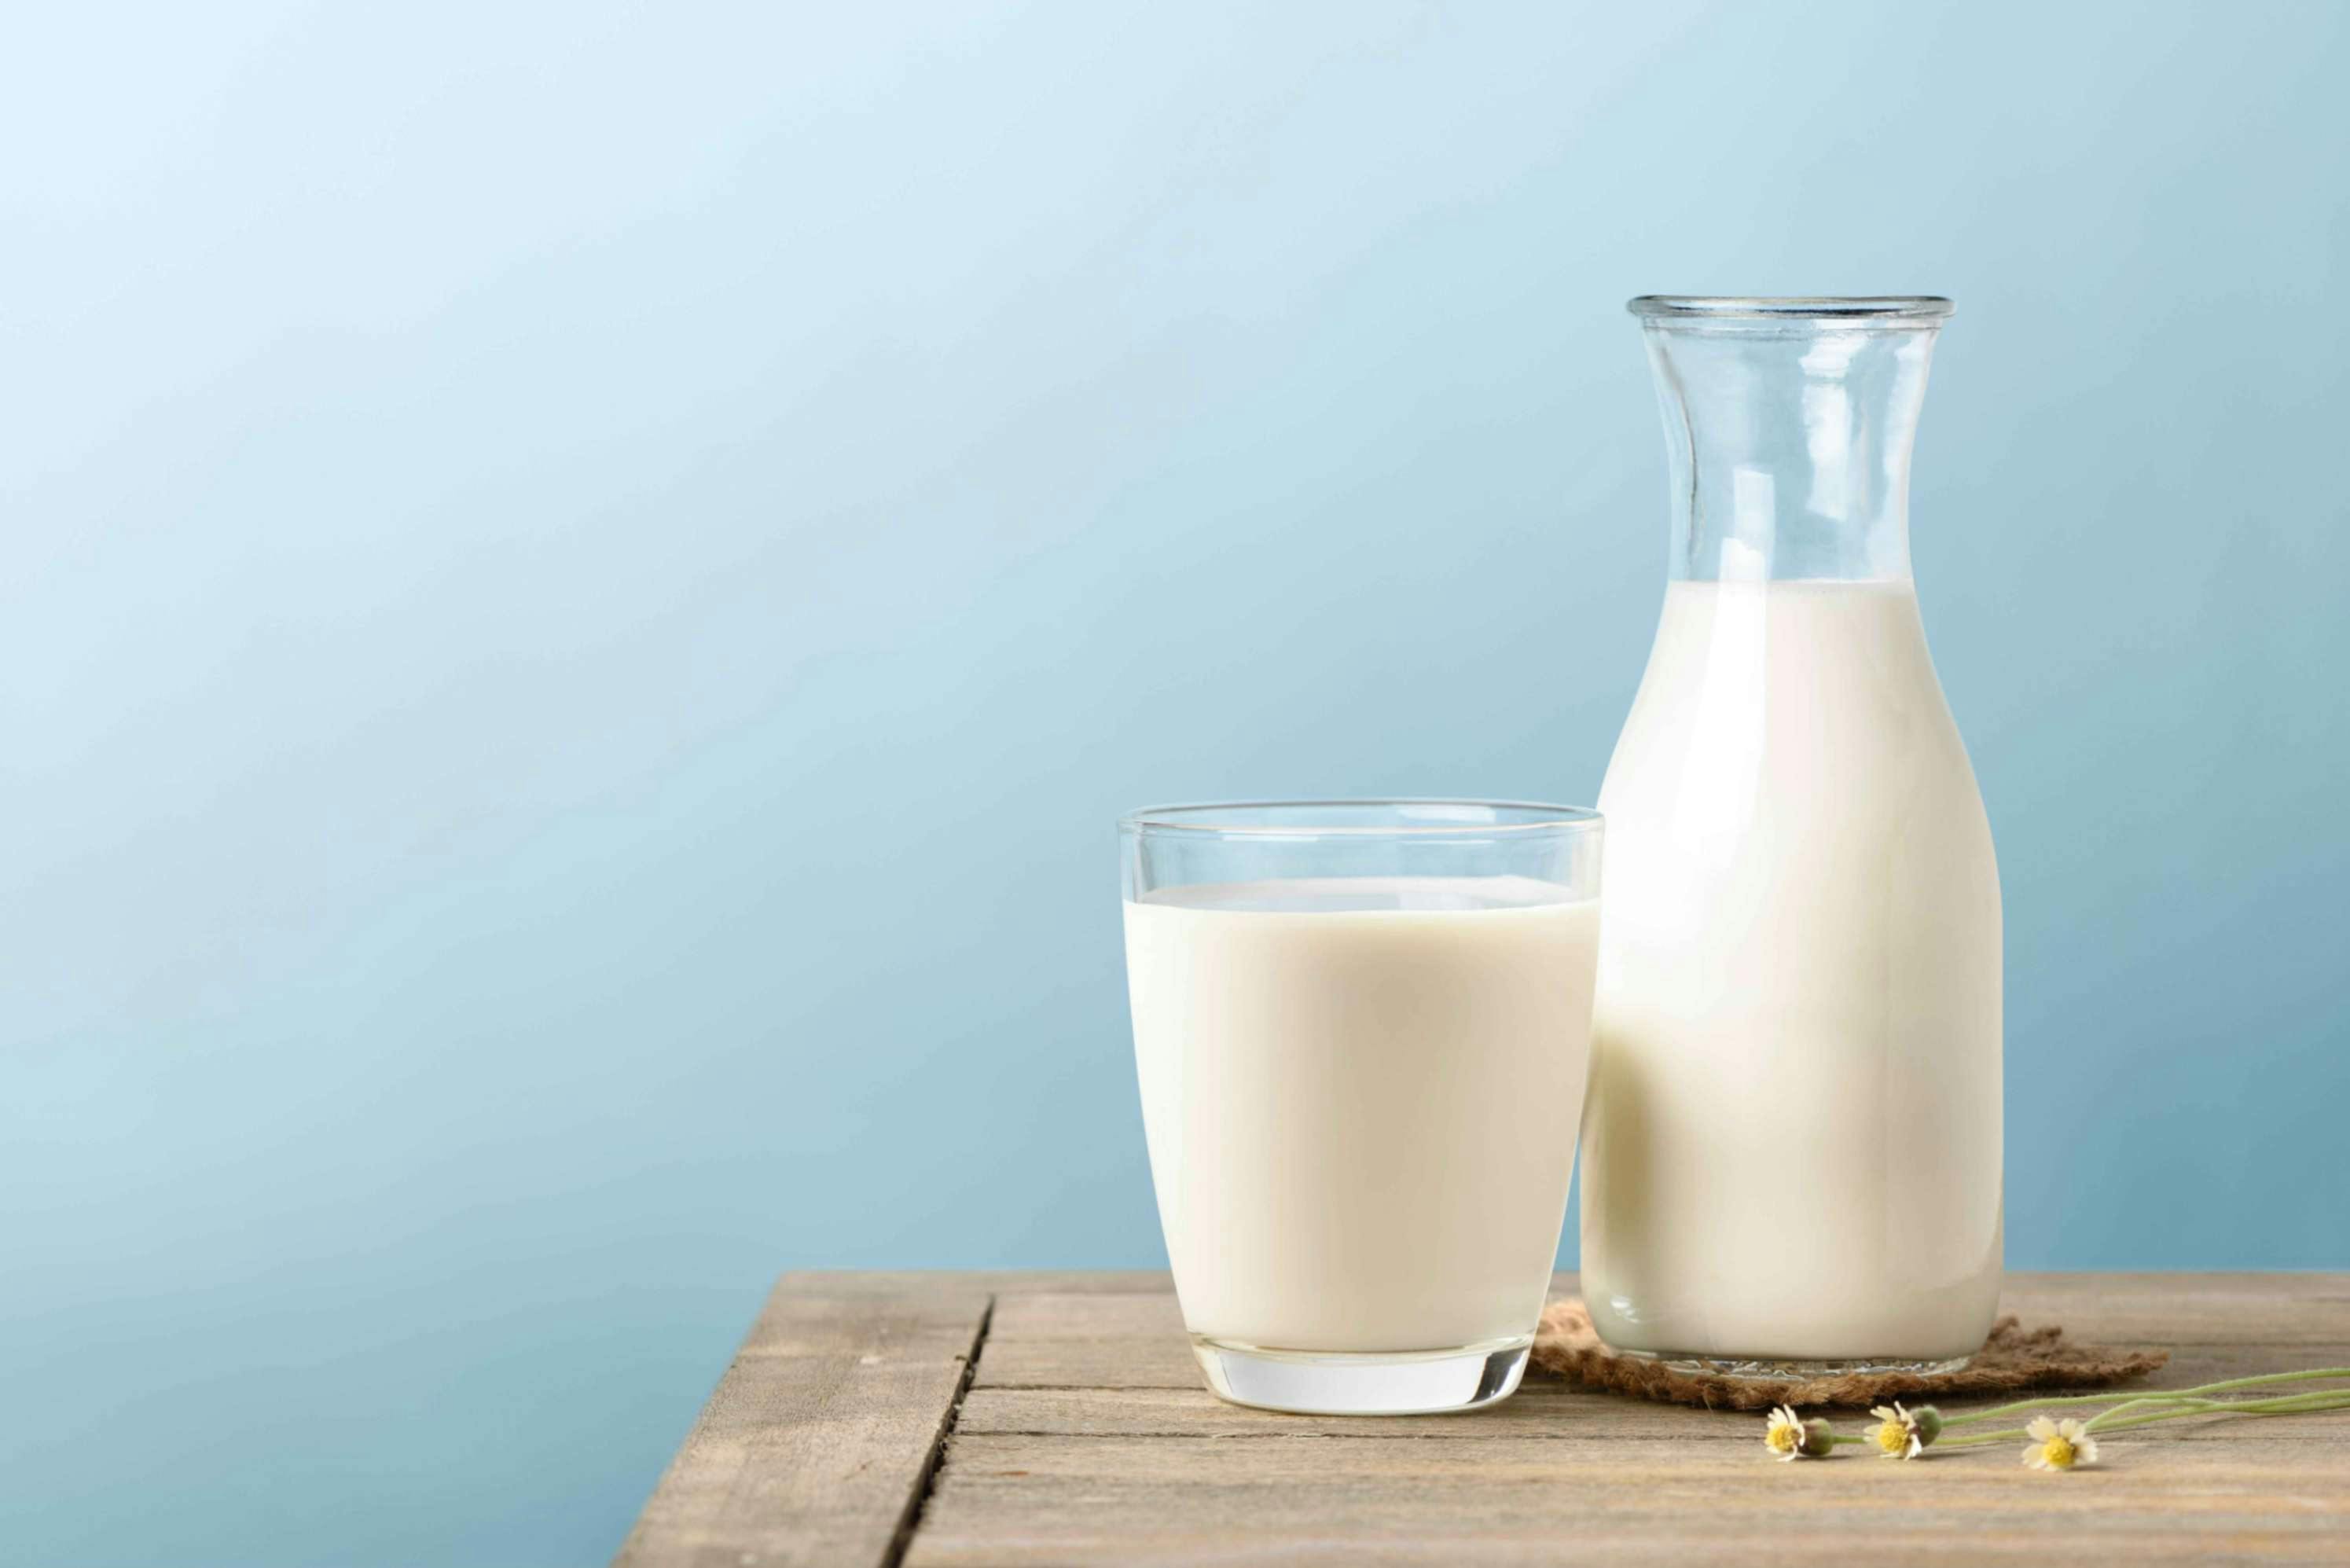 Vaso de leche y botella de leche sobre una mesa de madera